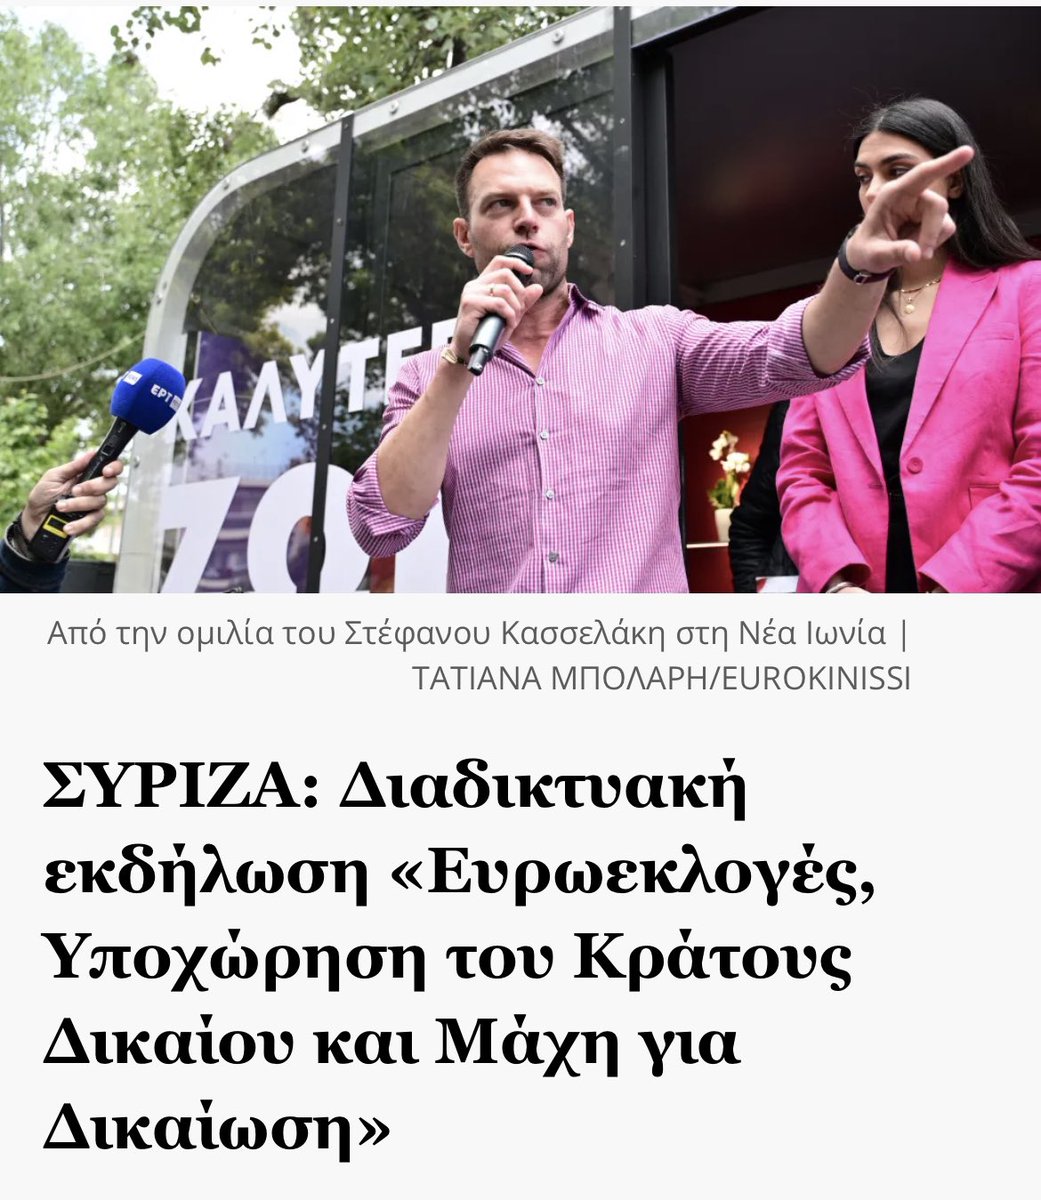 Διαδικτυακή εκδήλωση «Ευρωεκλογές, Υποχώρηση του Κράτους Δικαίου και Μάχη για Δικαίωση» Πέμπτη Πέμπτη, 16 Μάϊου 2024 στις 17:00 (ώρα Βελγίου), εν όψει των Ευρωεκλογών της 9ης Ιουνίου 2024. Περισσοτερα⬇️ efsyn.gr/politiki/antip… #Ευρωεκλογες2024